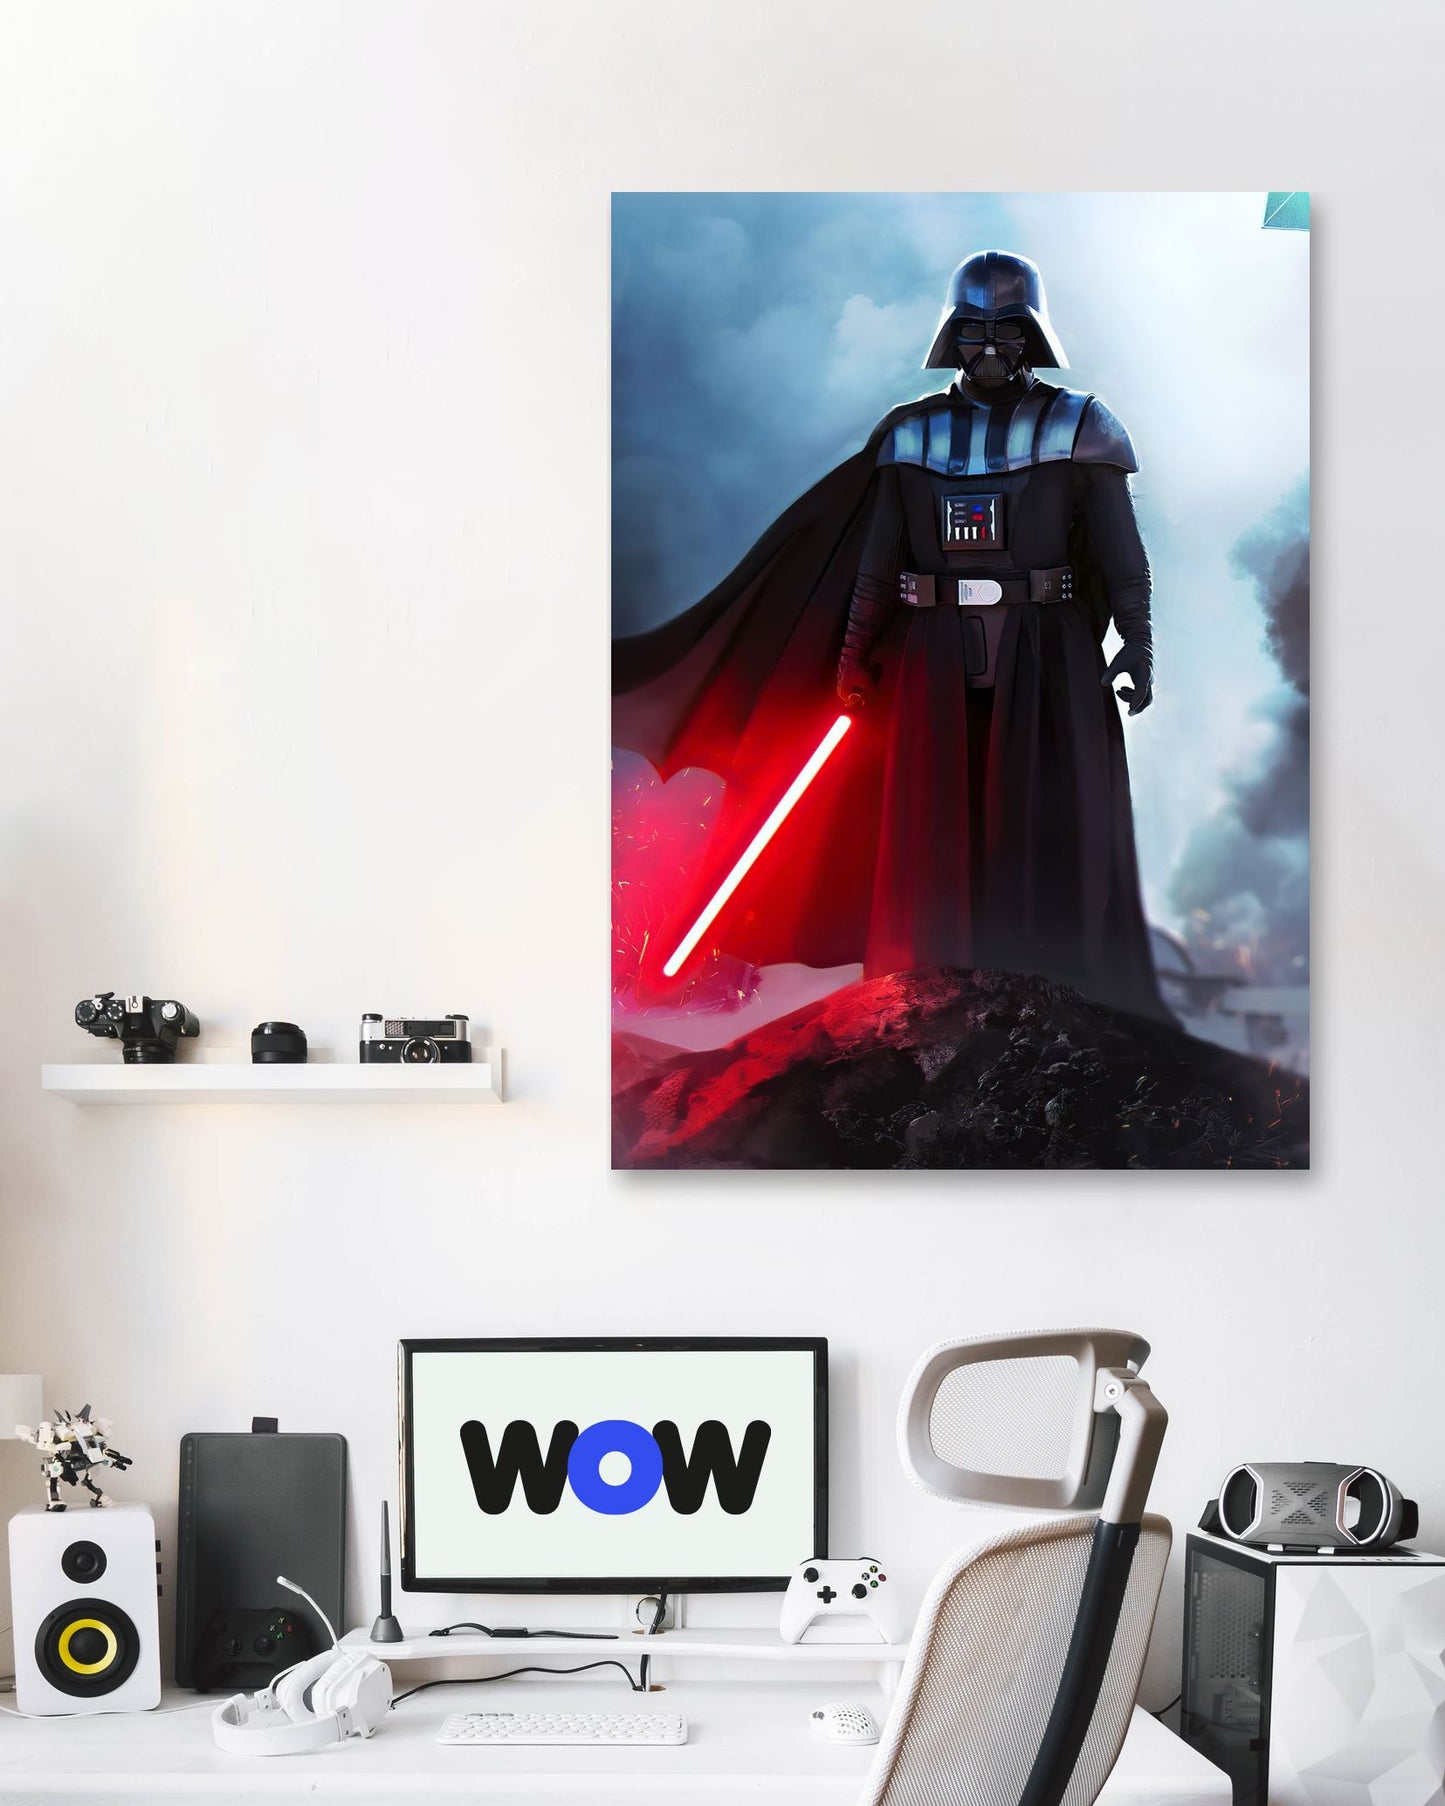 Darrth Vader 8 - @LightCreative